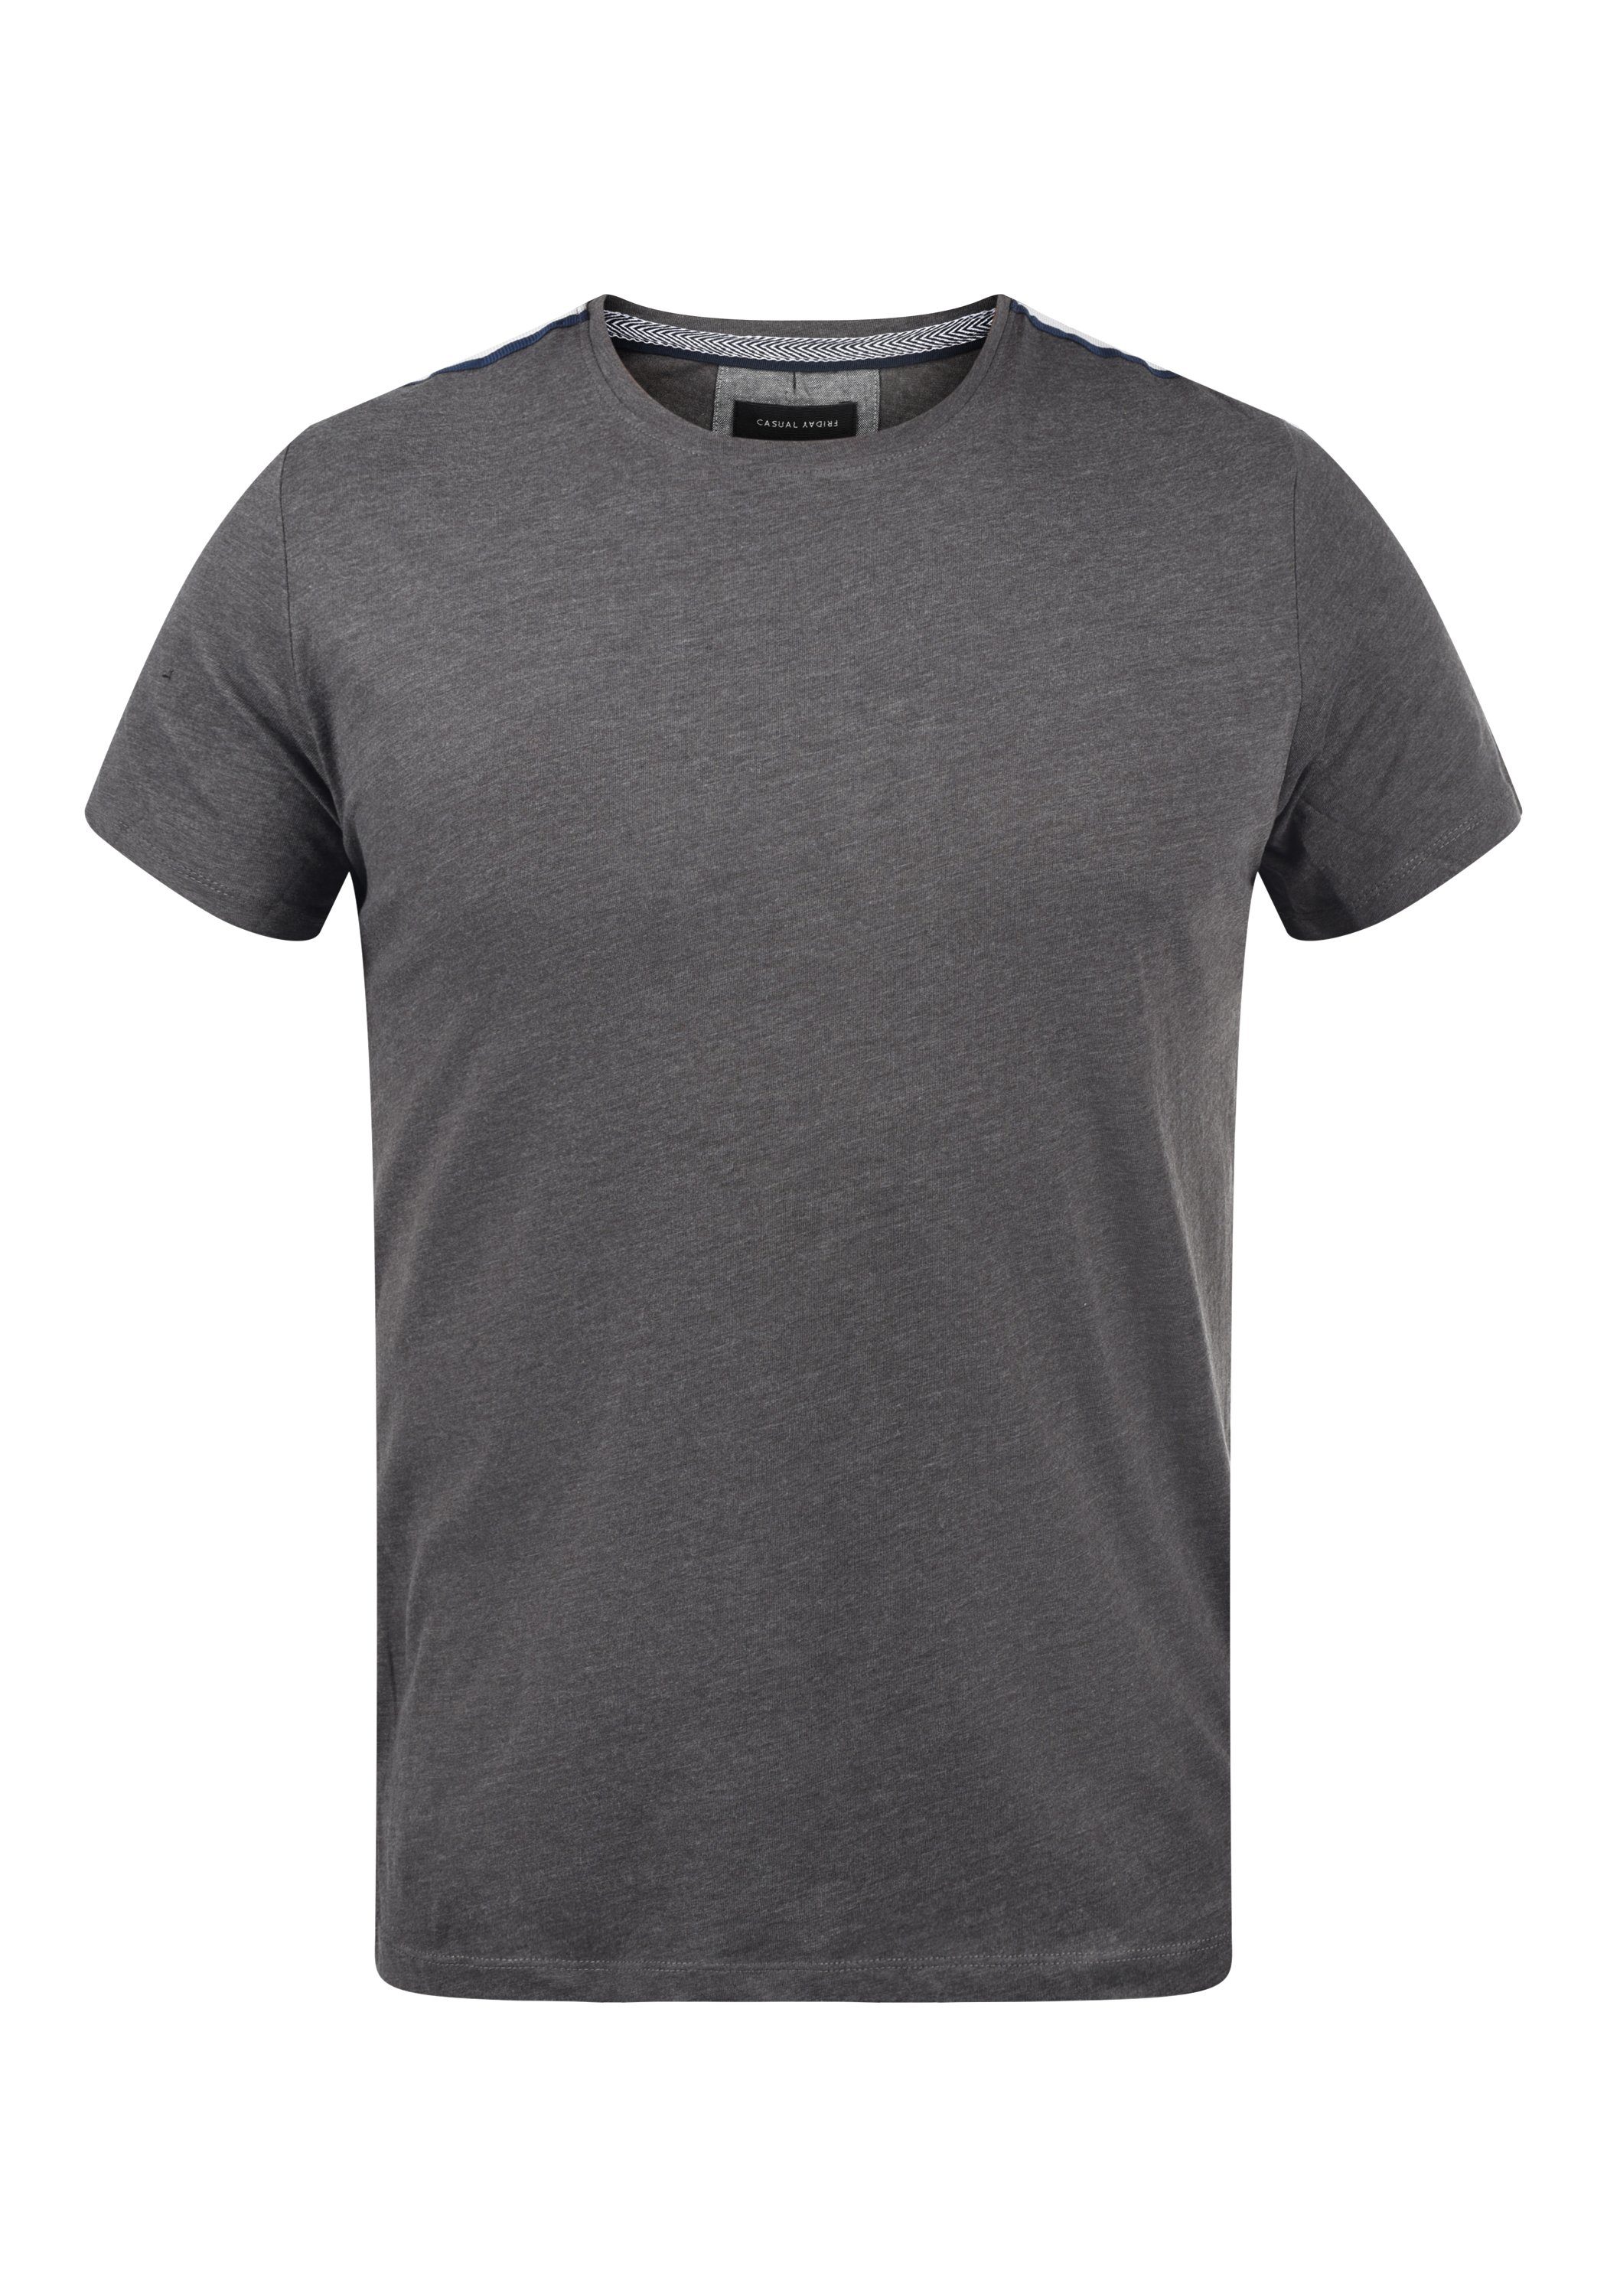 Pewter mix - Rundhalsshirt mit 20502910 Friday (50817) Rundhalsauschnitt T-Shirt CFTshirt Casual